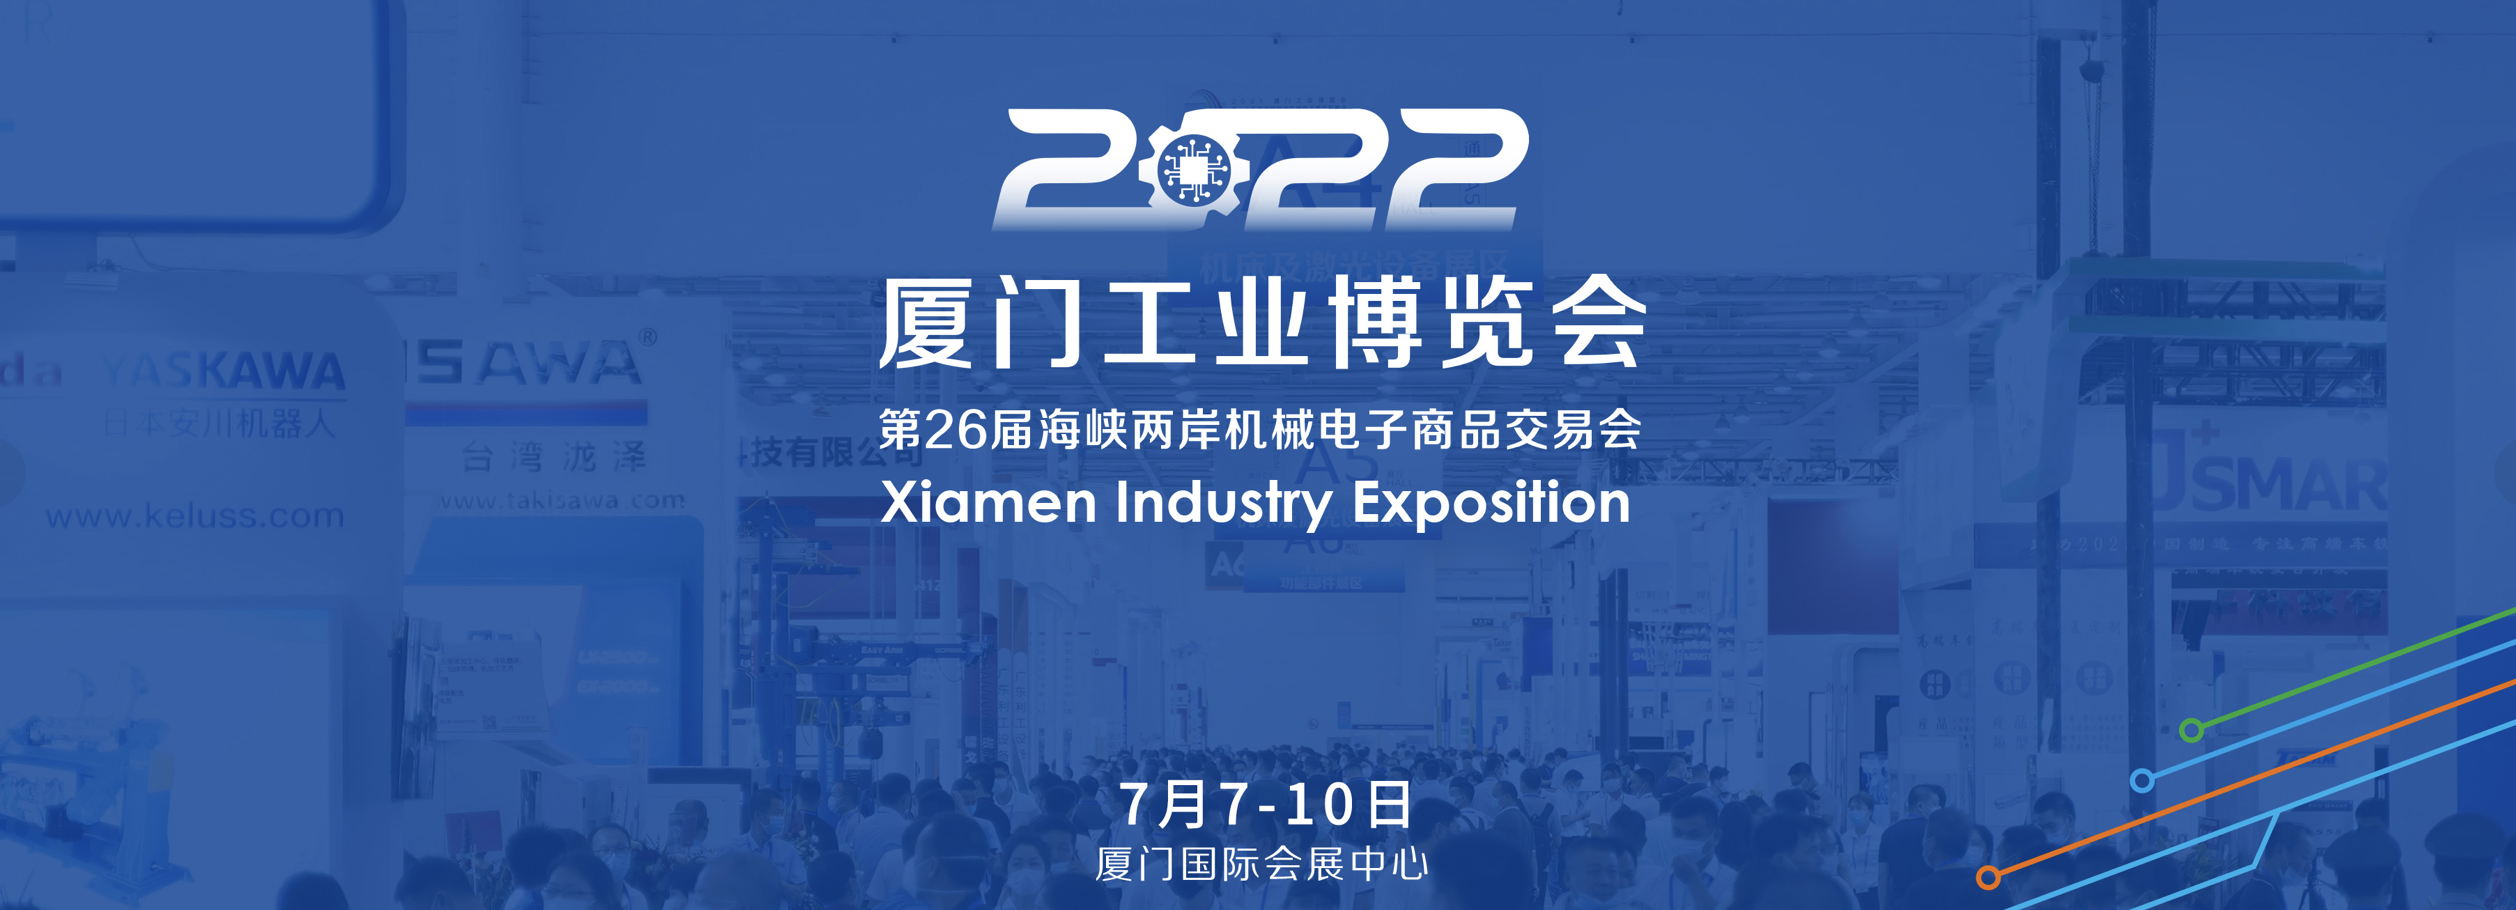 2022厦门工业博览会暨第26届海峡两岸机械电子商品交易会在厦门开幕